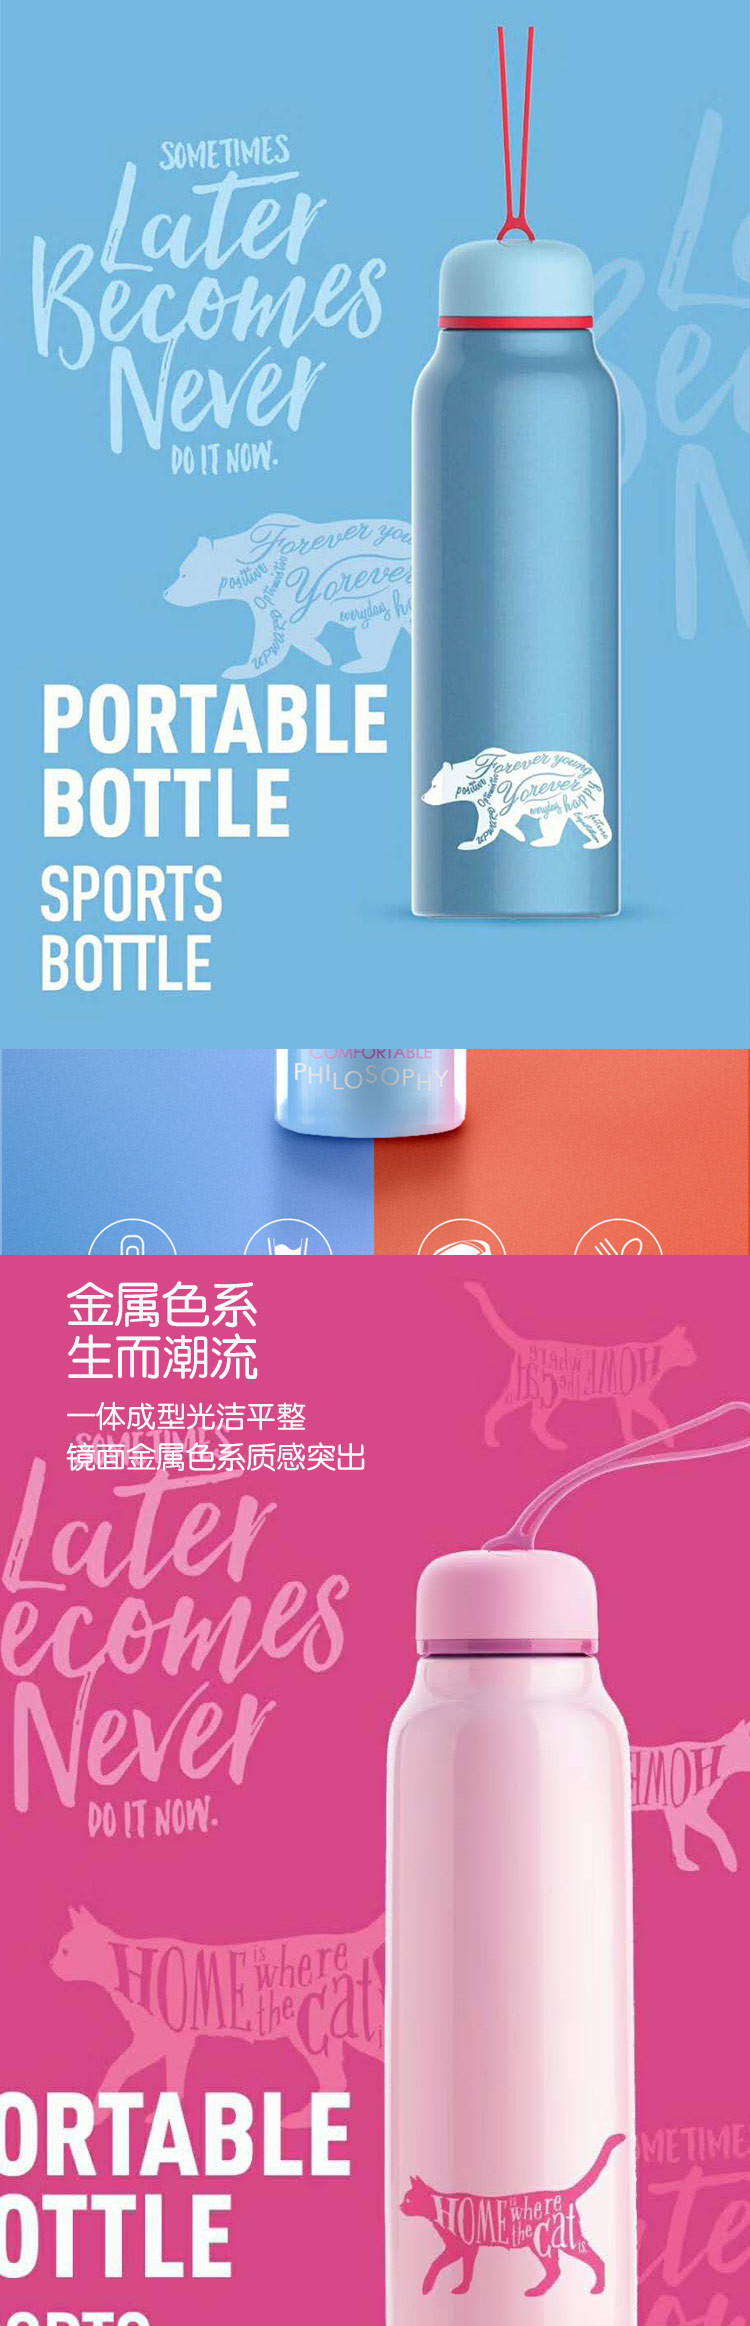 台湾Artiart创意便携水杯 波特保温杯 粉色 DRIN058P-CuteCat